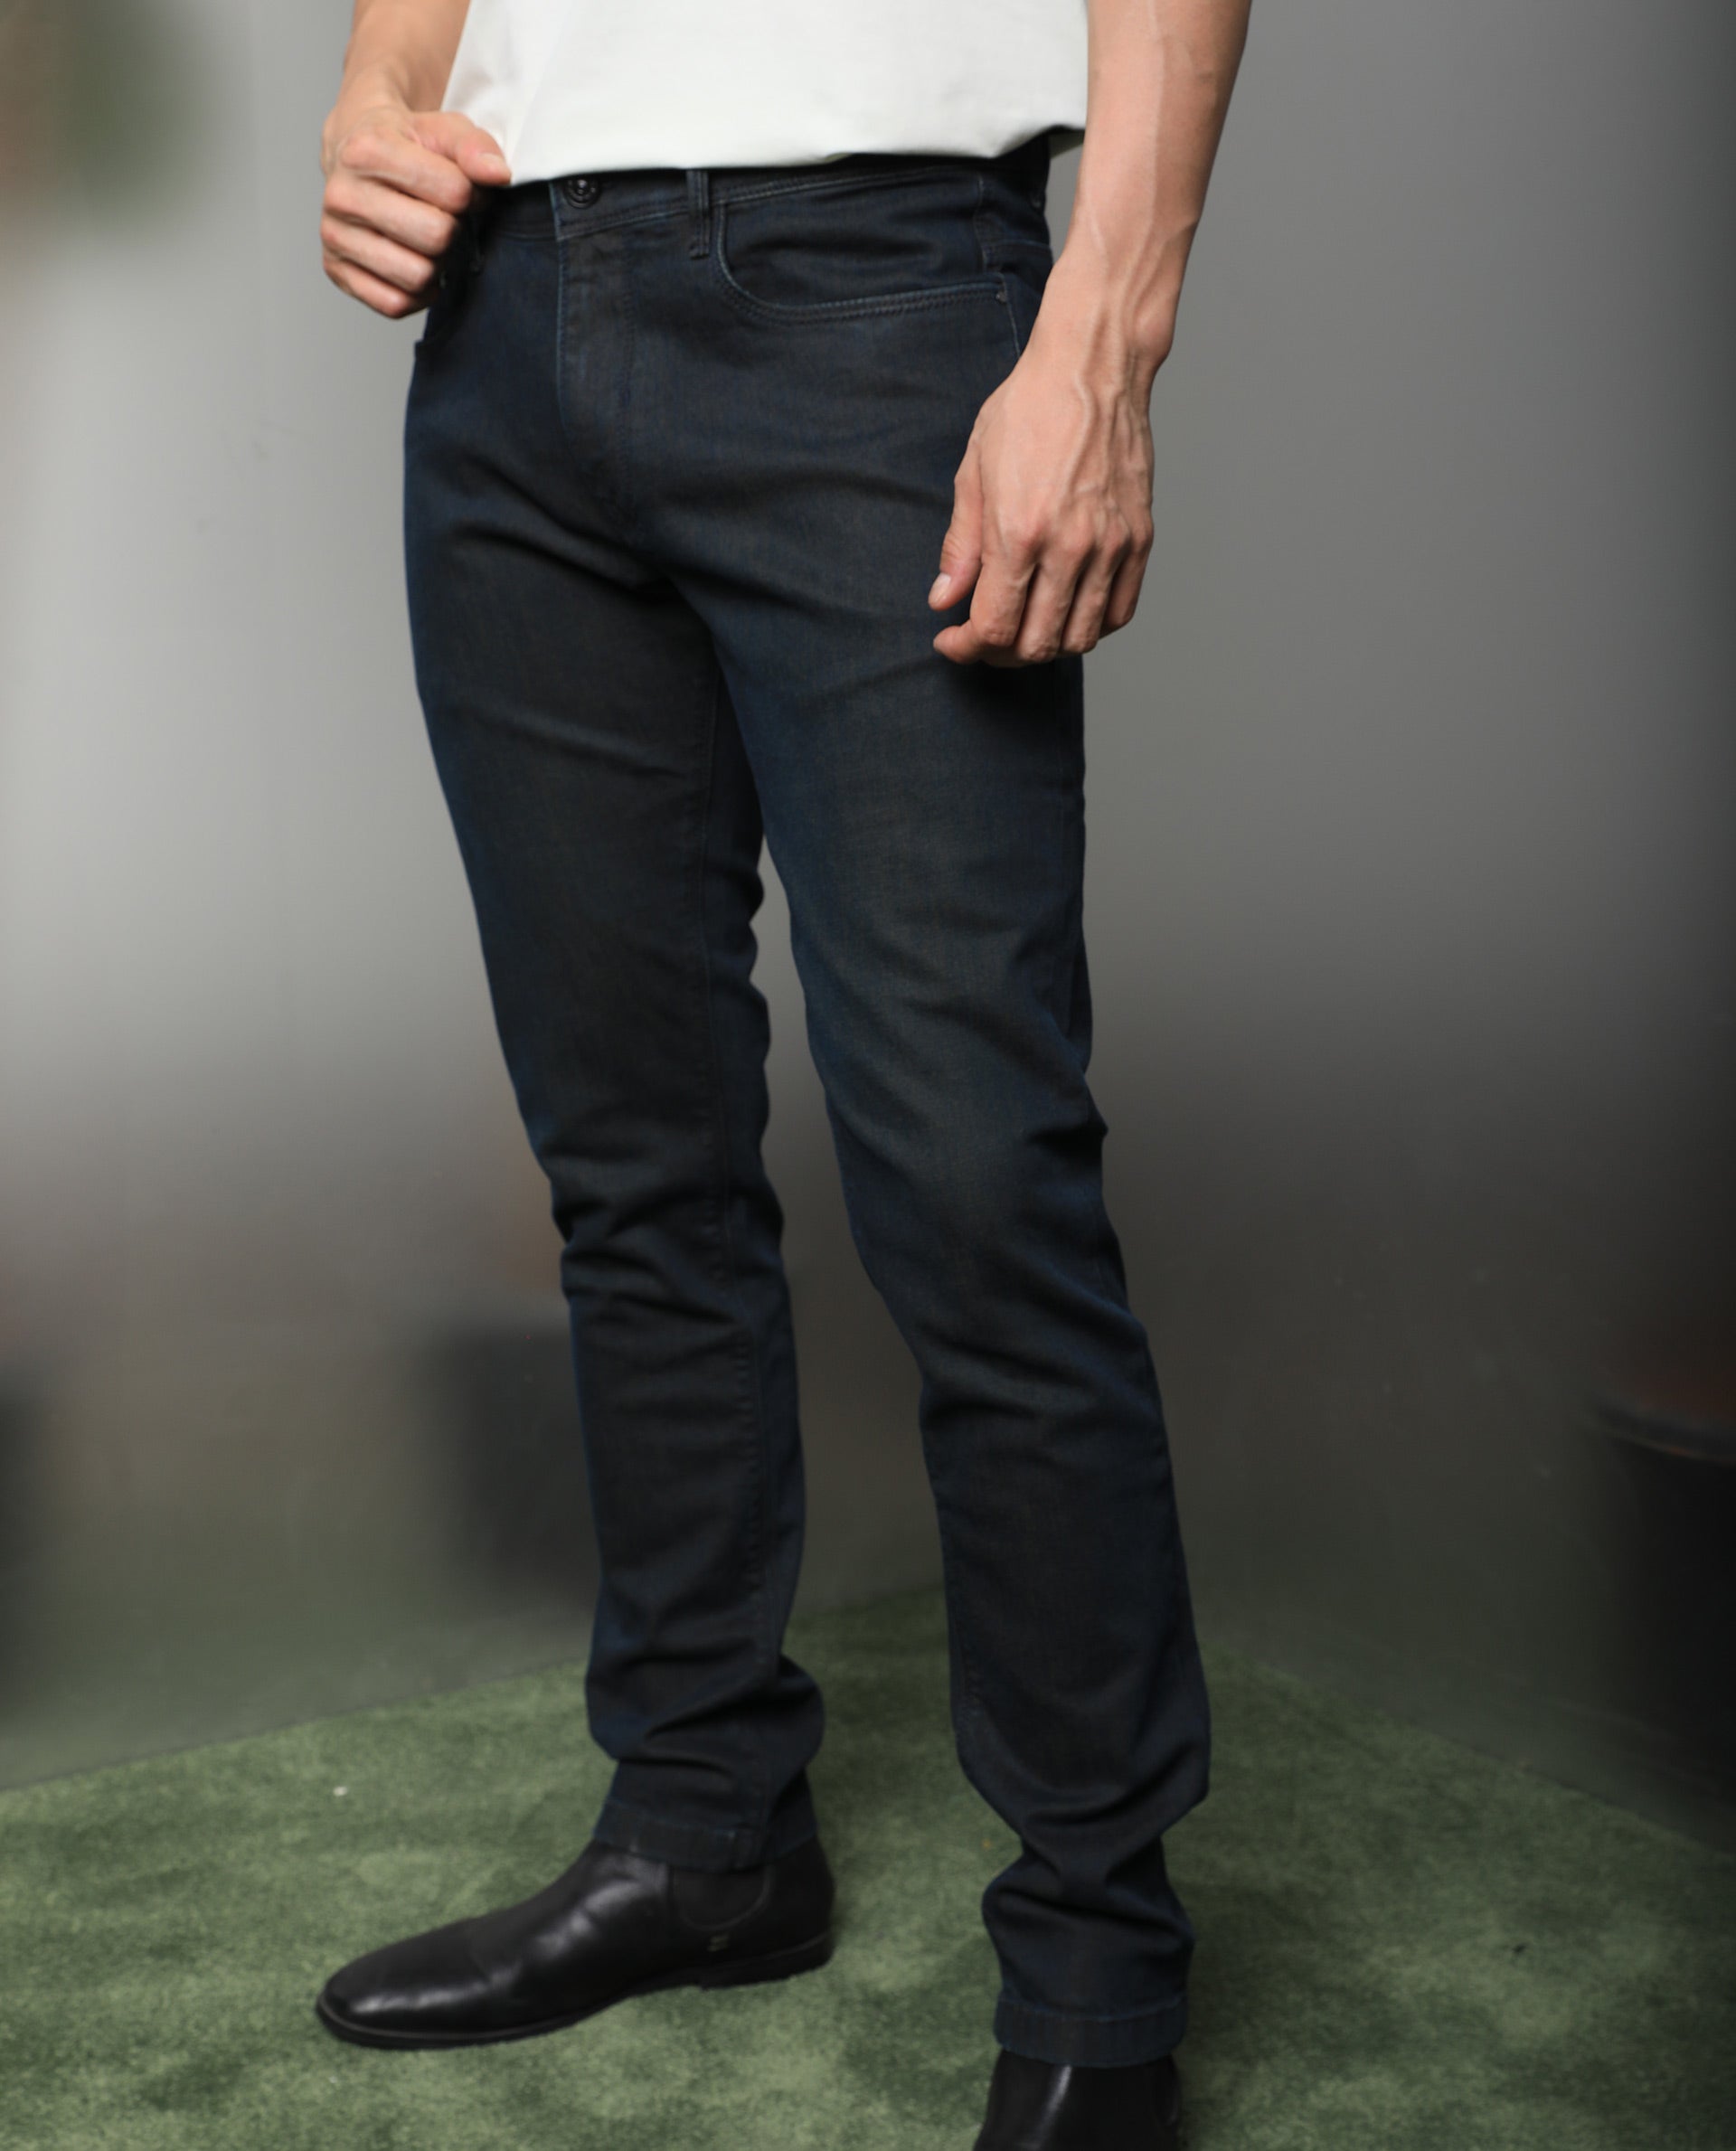 TEGIAS Men's Slim Fit Stretch Jeans Black Jeans Men Classic Work Pants 28  at Amazon Men's Clothing store